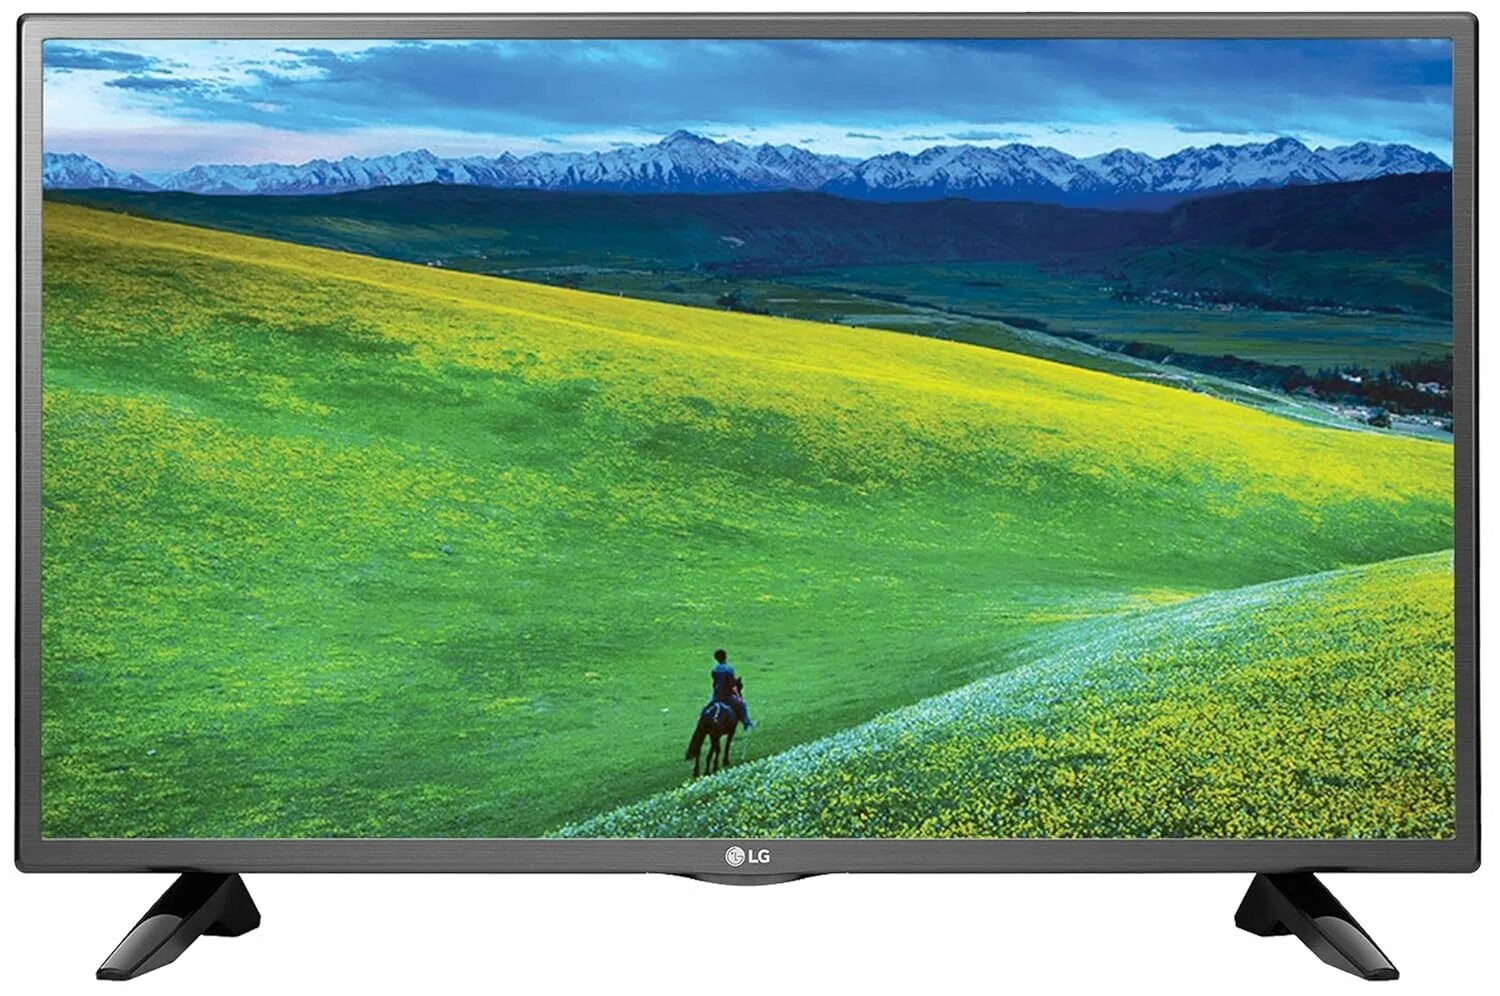 Телевизор 30 см. LG 32lm550b. Телевизор LG 32lm550b. Телевизор led 32 LG 32lm550b. LG 32 inch.